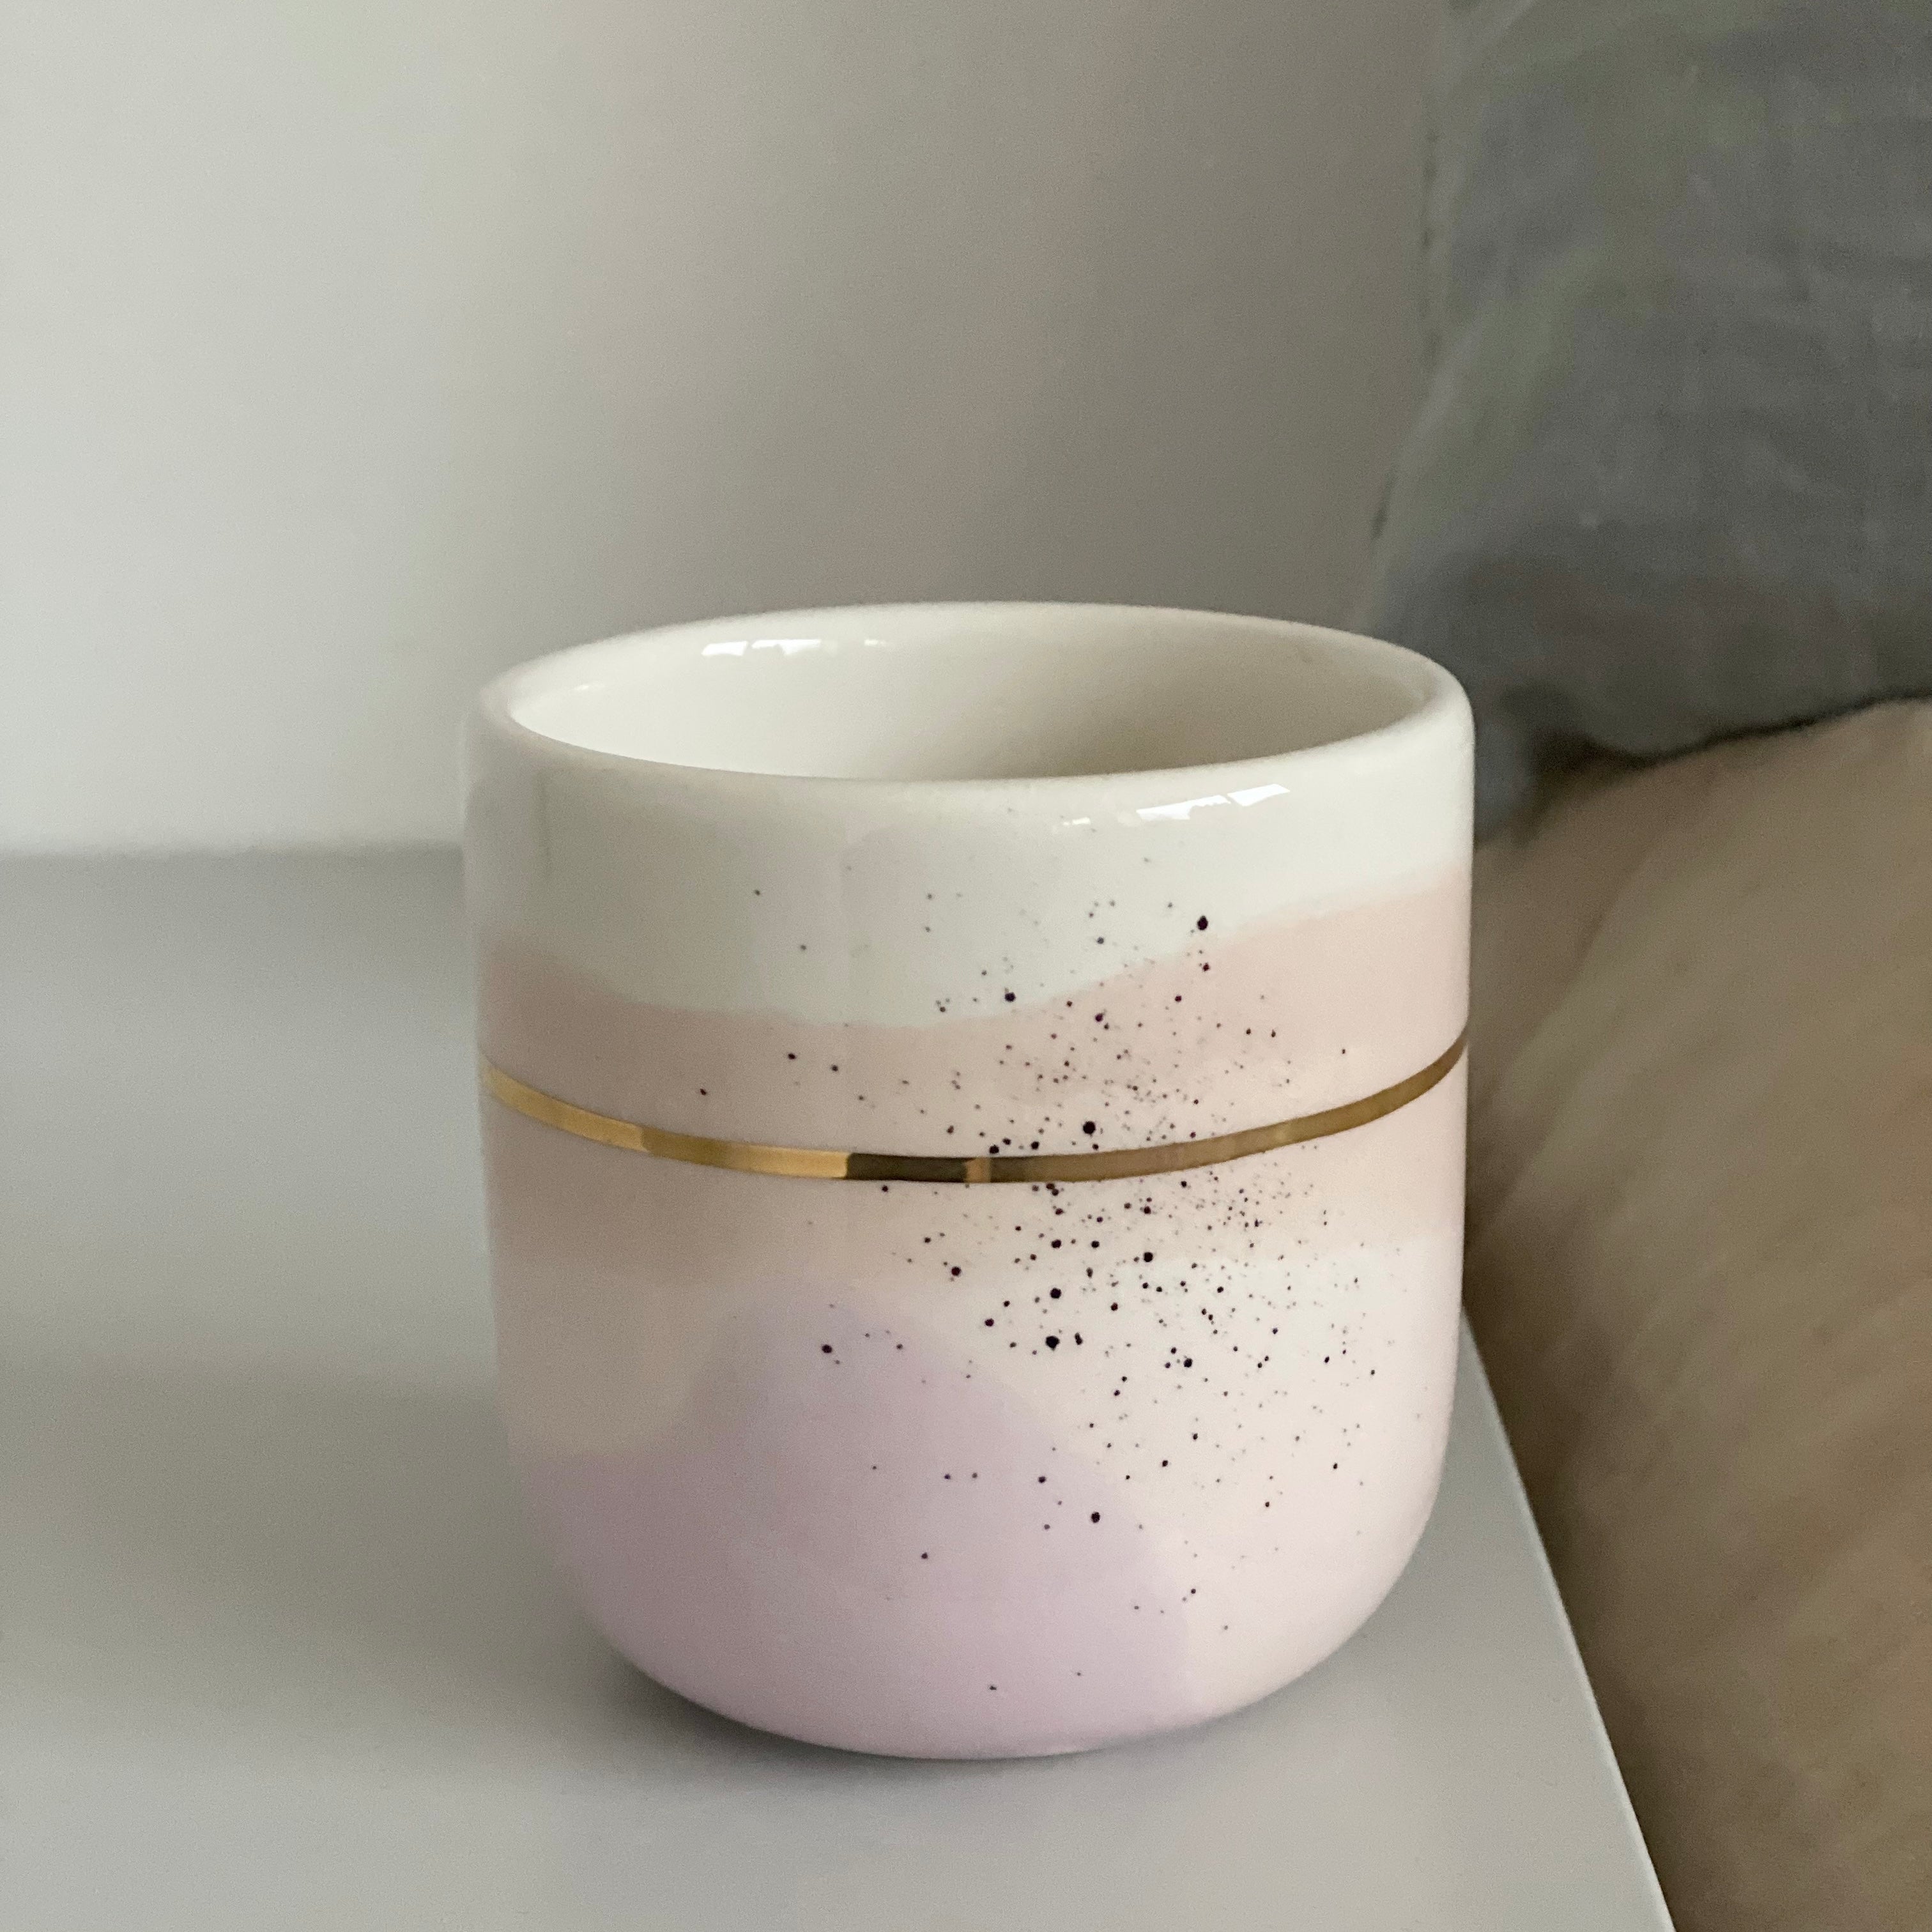 Marinski Heartmades latte kop Landscape - light pink, crema and lavender